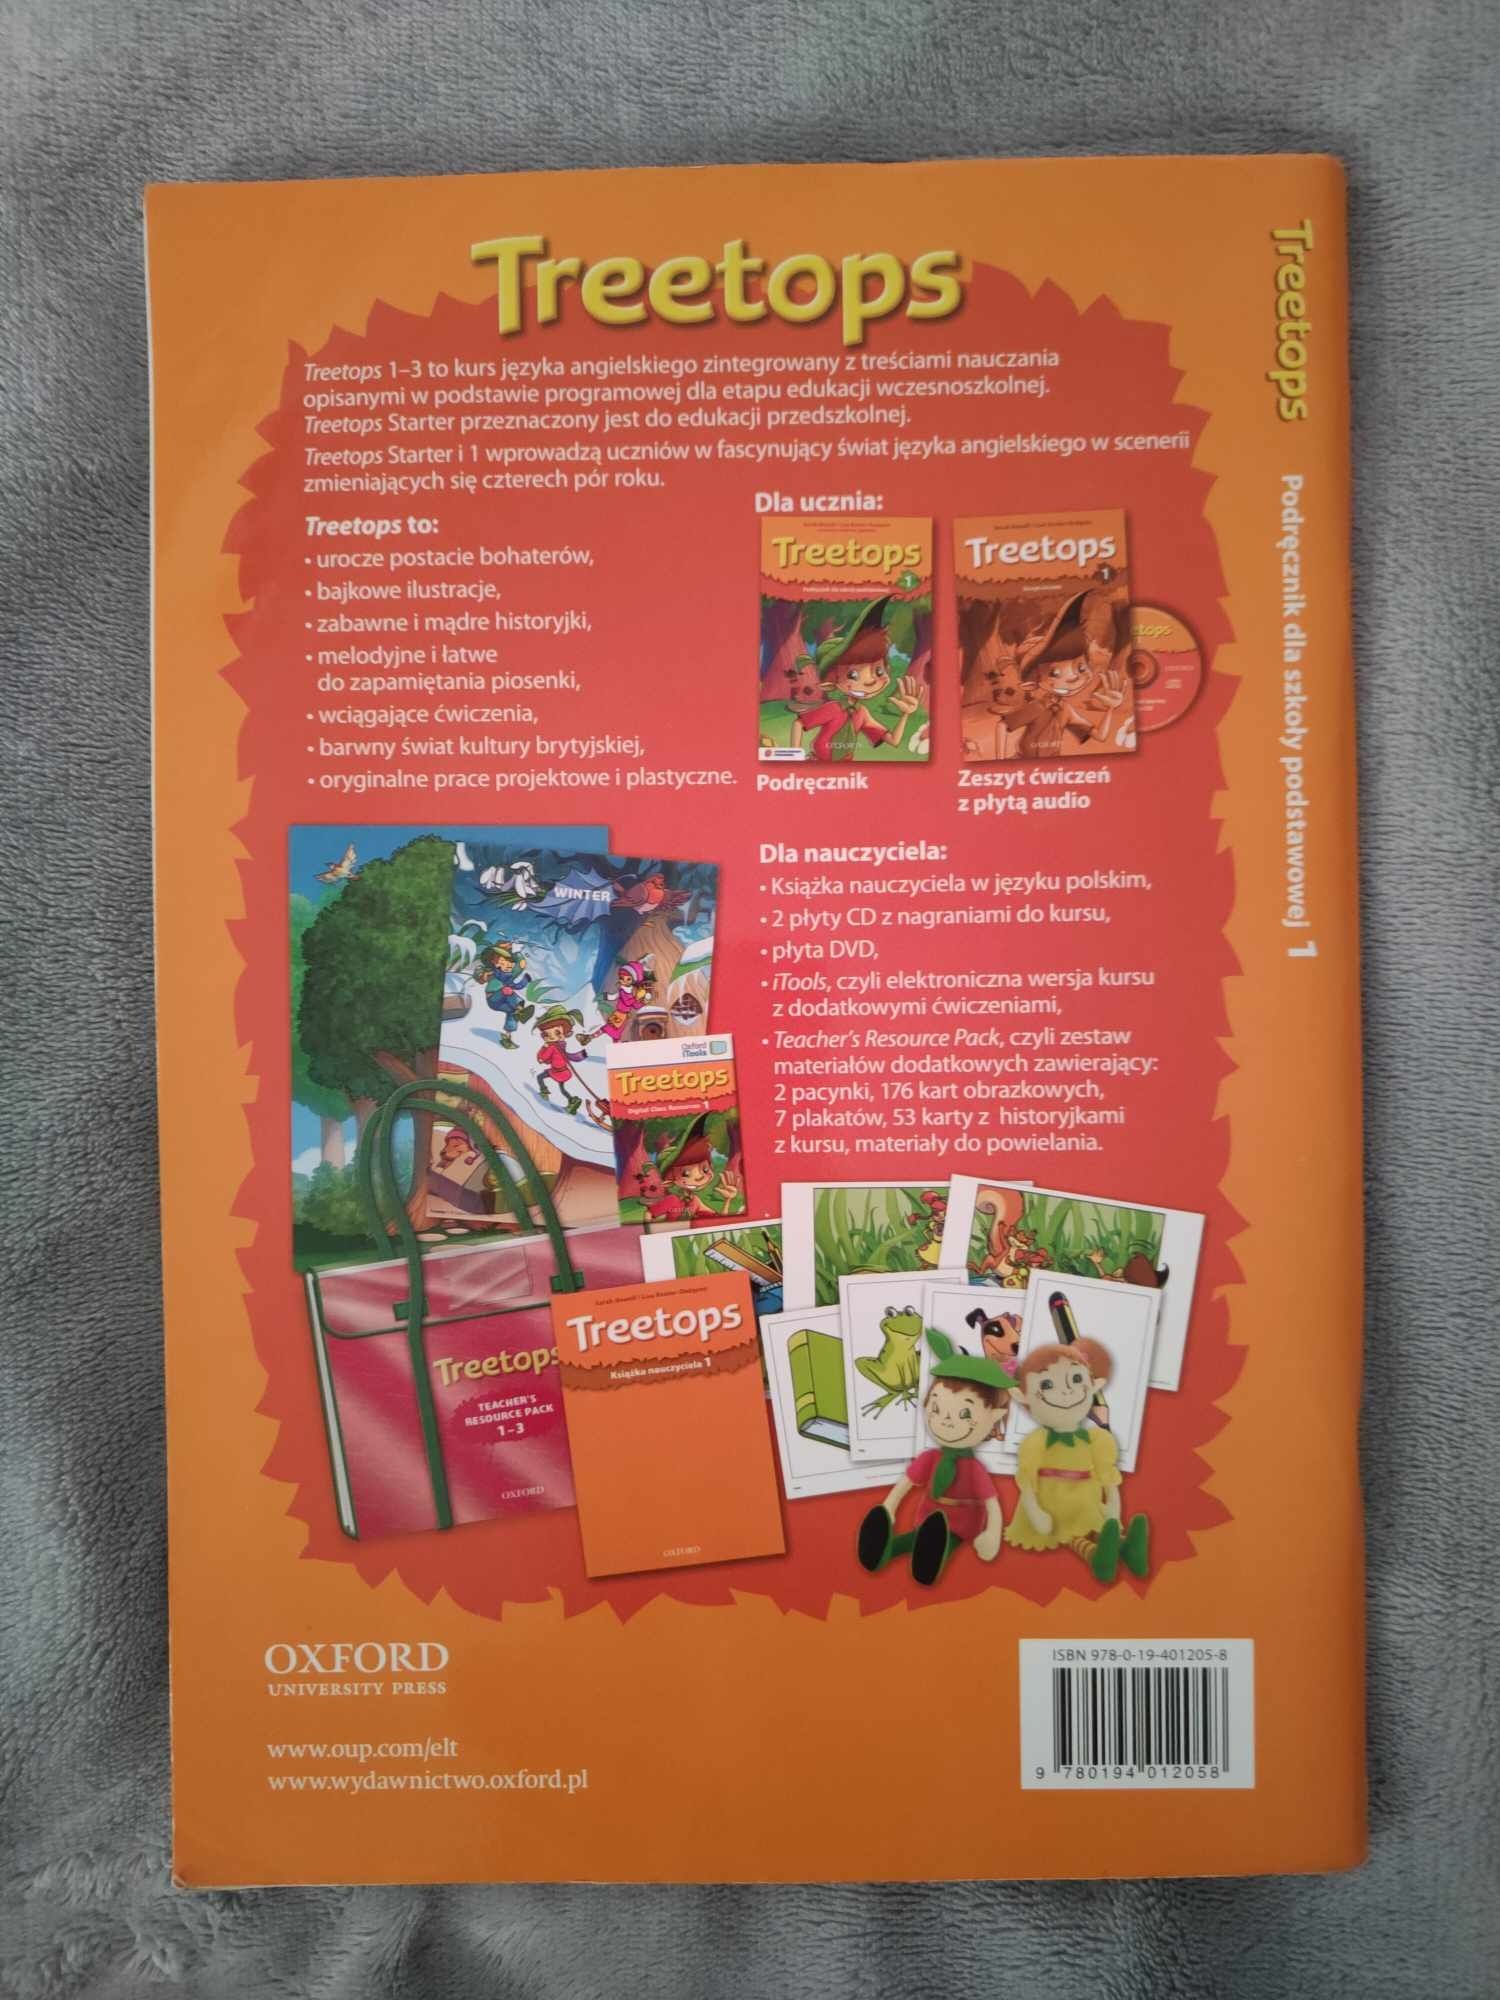 Treetops 1 podręcznik do języka angielskiego do klasy 1 podstawowej